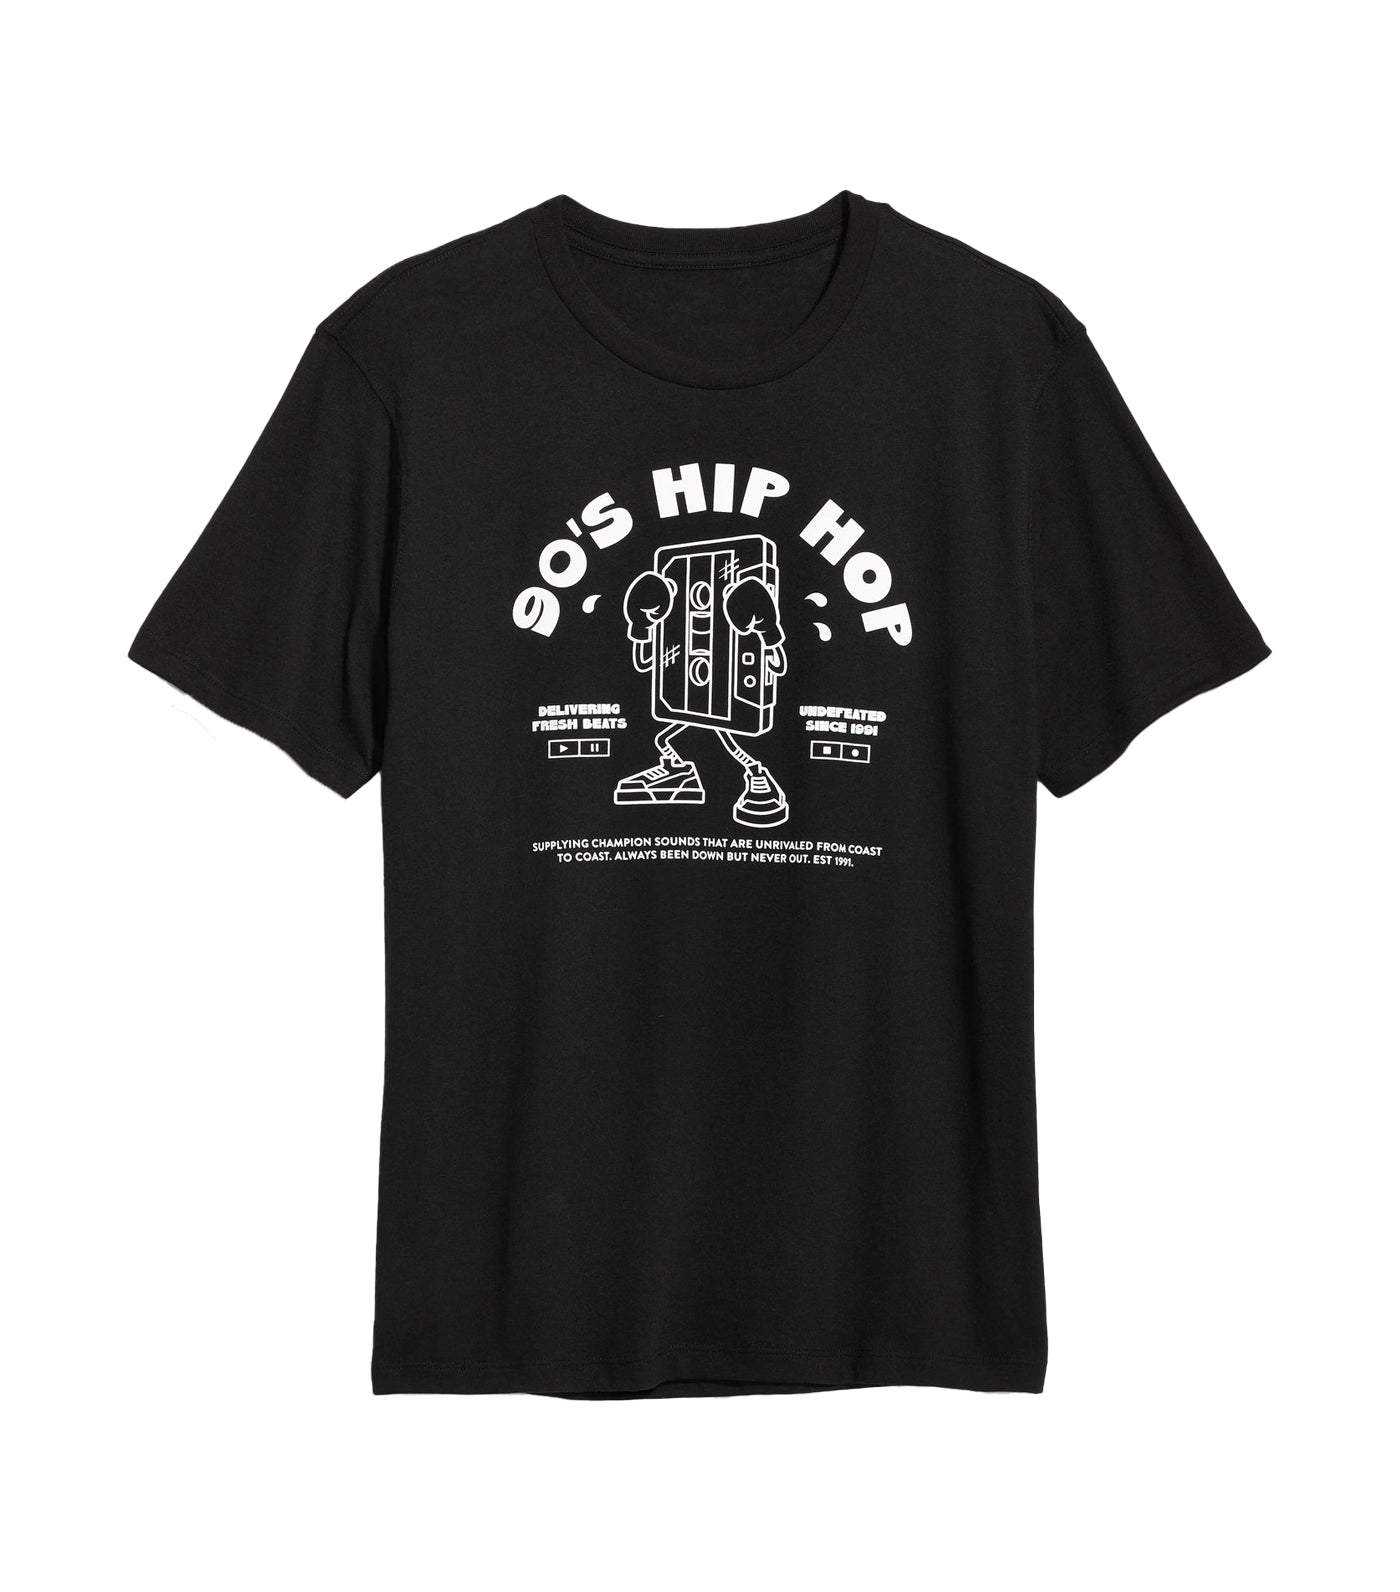 Soft-Washed Graphic T-Shirt for Men Black Jack